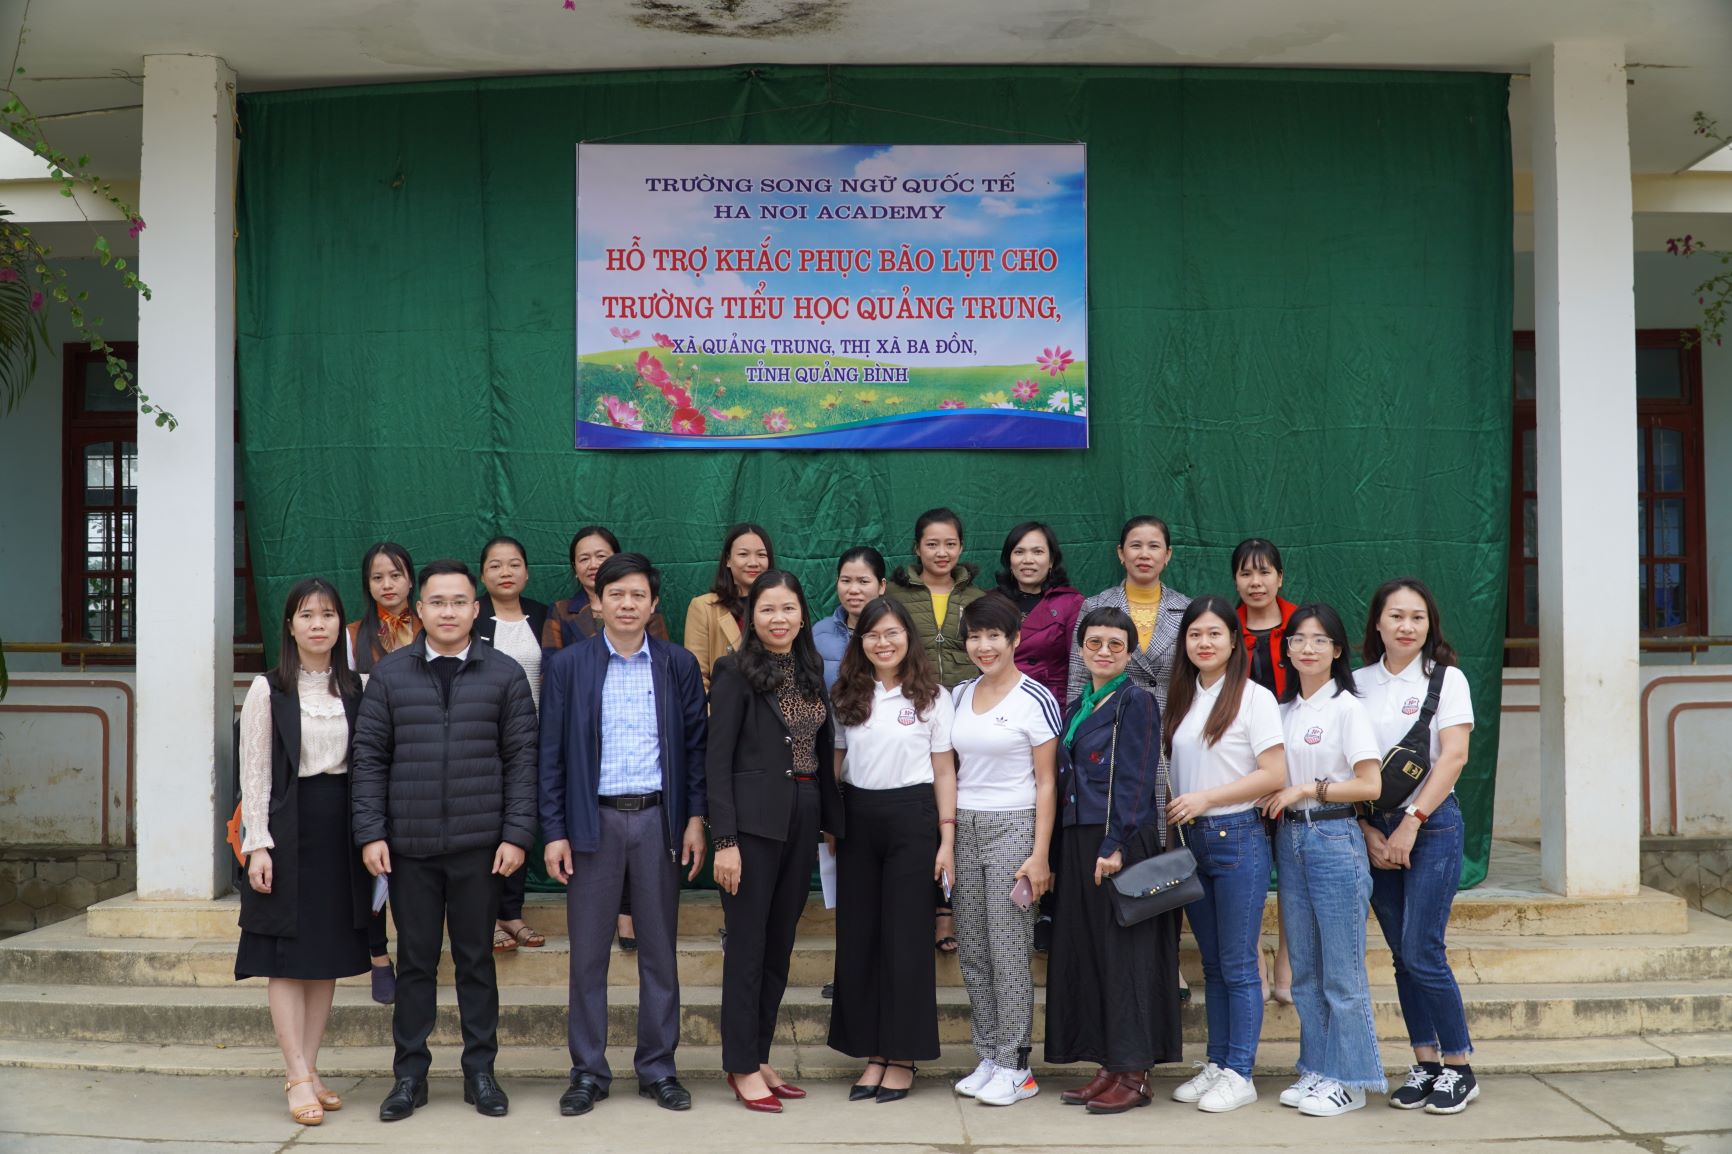 Chuyến đi từ thiện đến Quảng Bình đong đầy yêu thương của Hanoi Academy